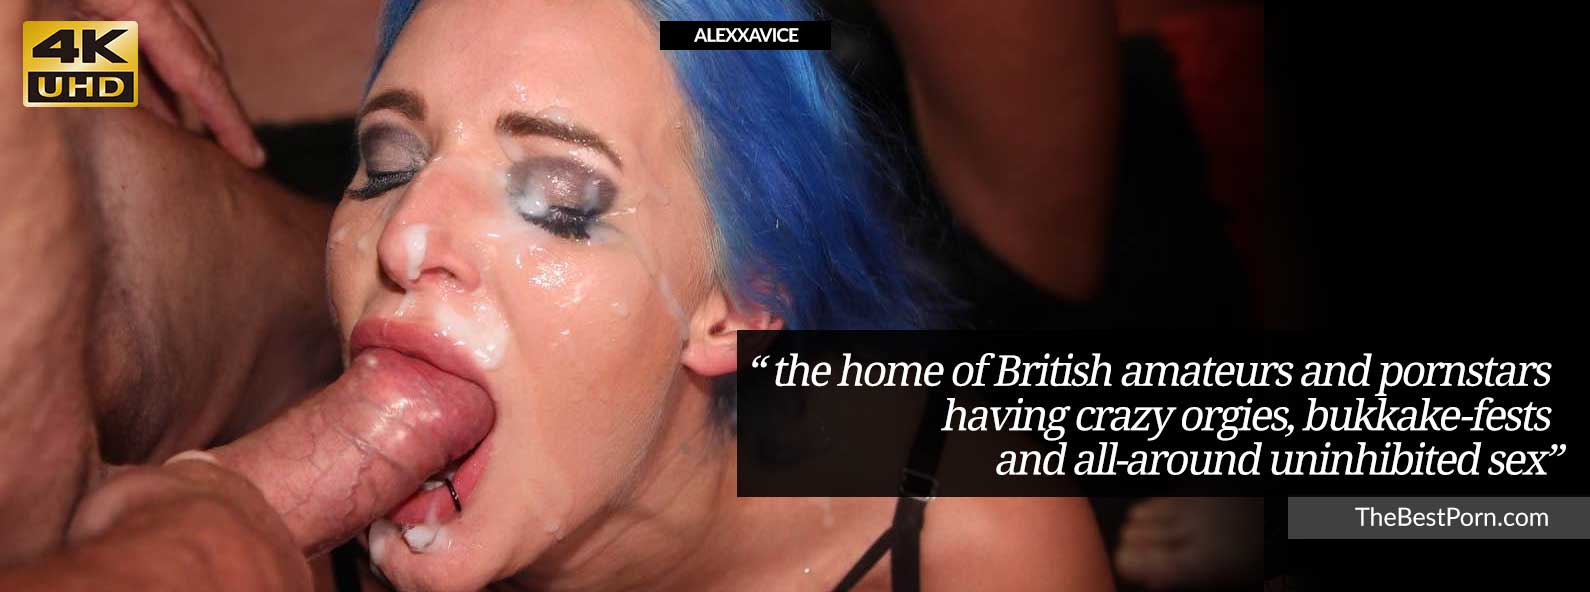 British pornstar Alexxavice takes bukkake party facials